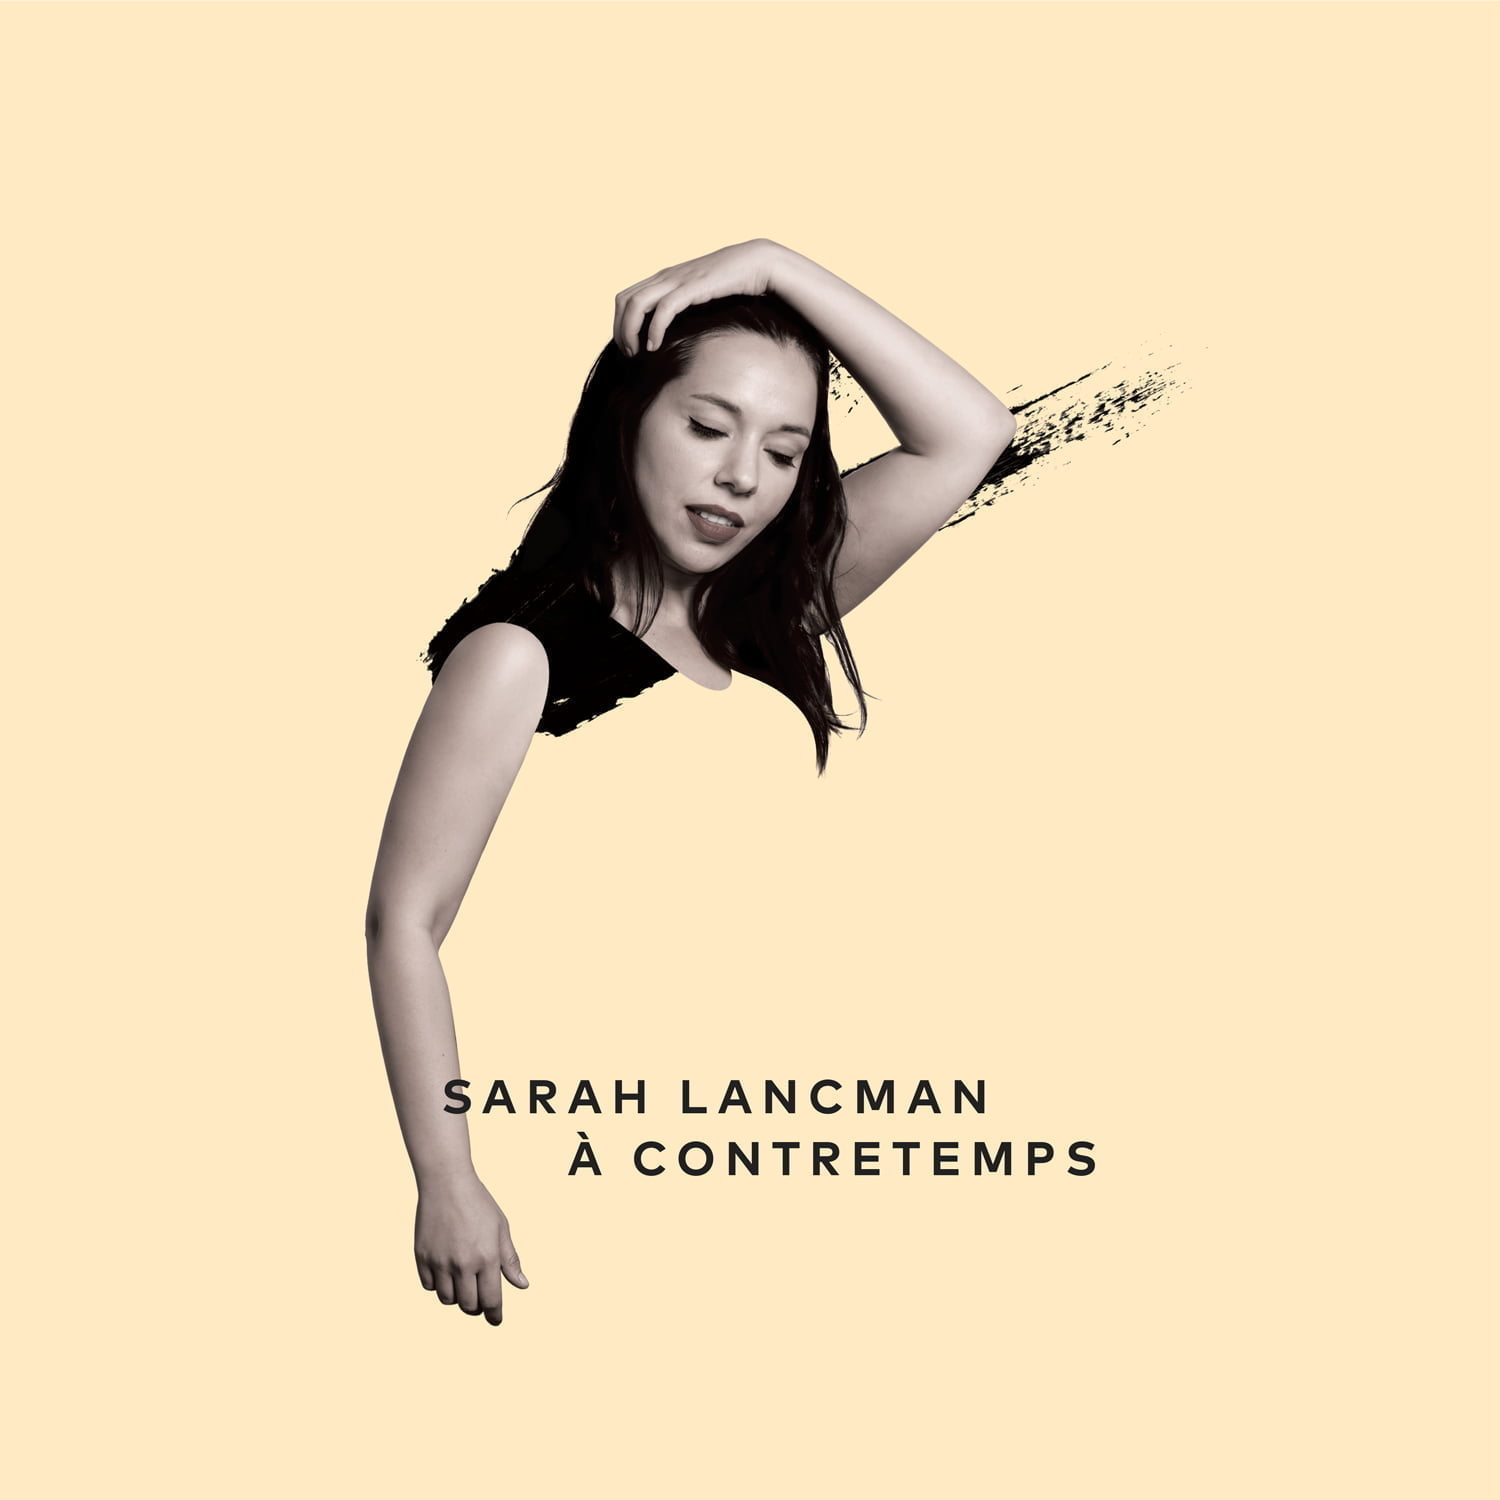 sarahlancman pochette2 Sarah Lancman émouvante plus que jamais avec A Contretemps